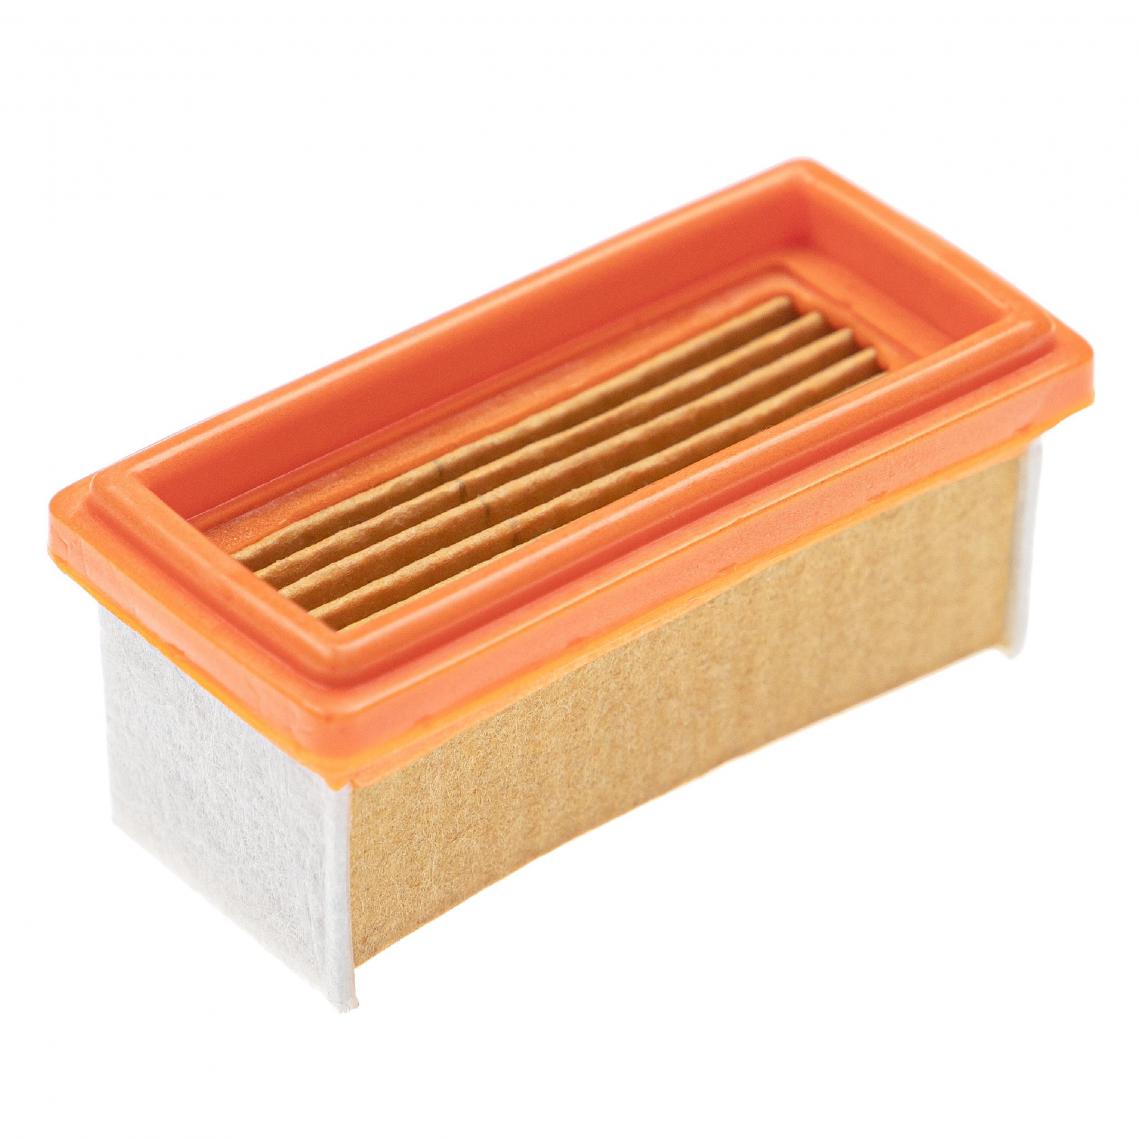 Vhbw - vhbw Filtre compatible avec Hilti DRS scie sauteuse - 1x filtre principal, orange / blanc - Clouterie